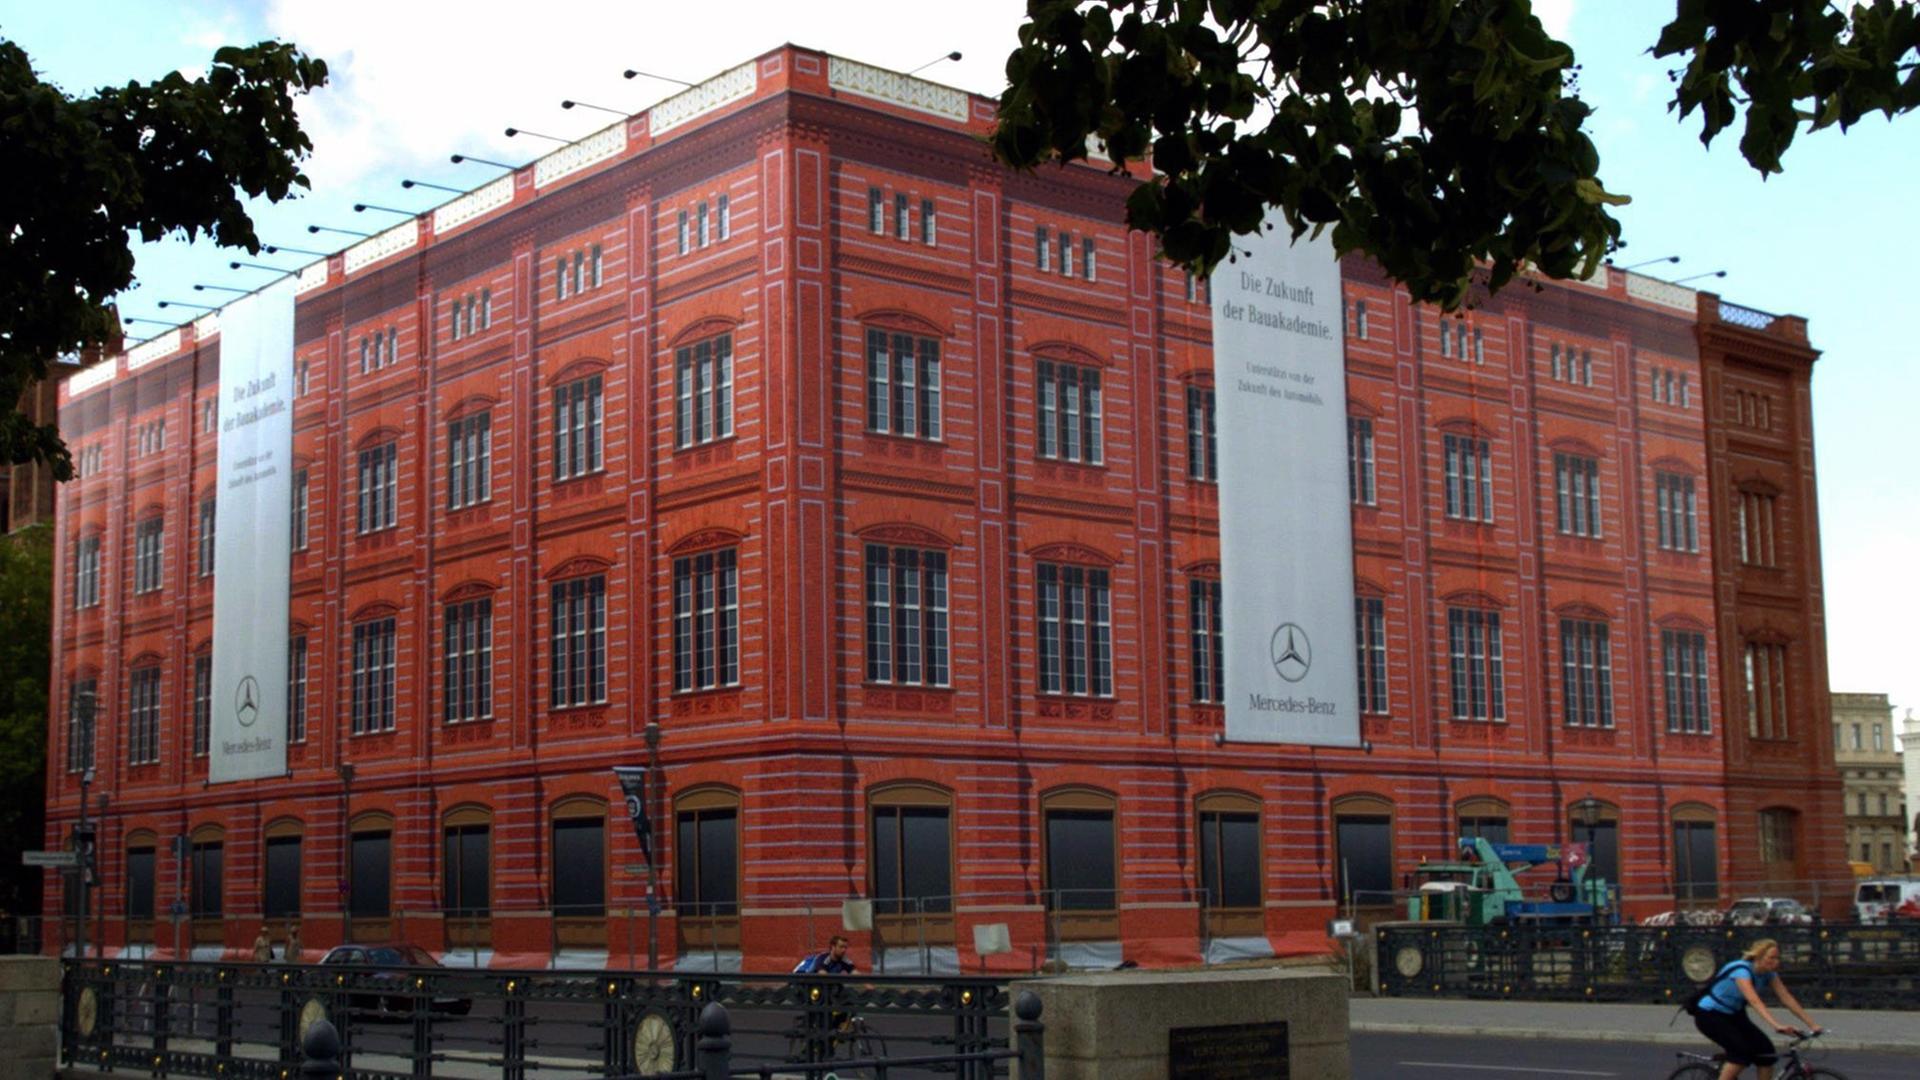 Schaufassade, auf der die von Karl Friedrich Schinkel errichtete Bauakadmie zu sehen ist, aufgenommen 2004 am Berliner Schlossplatz